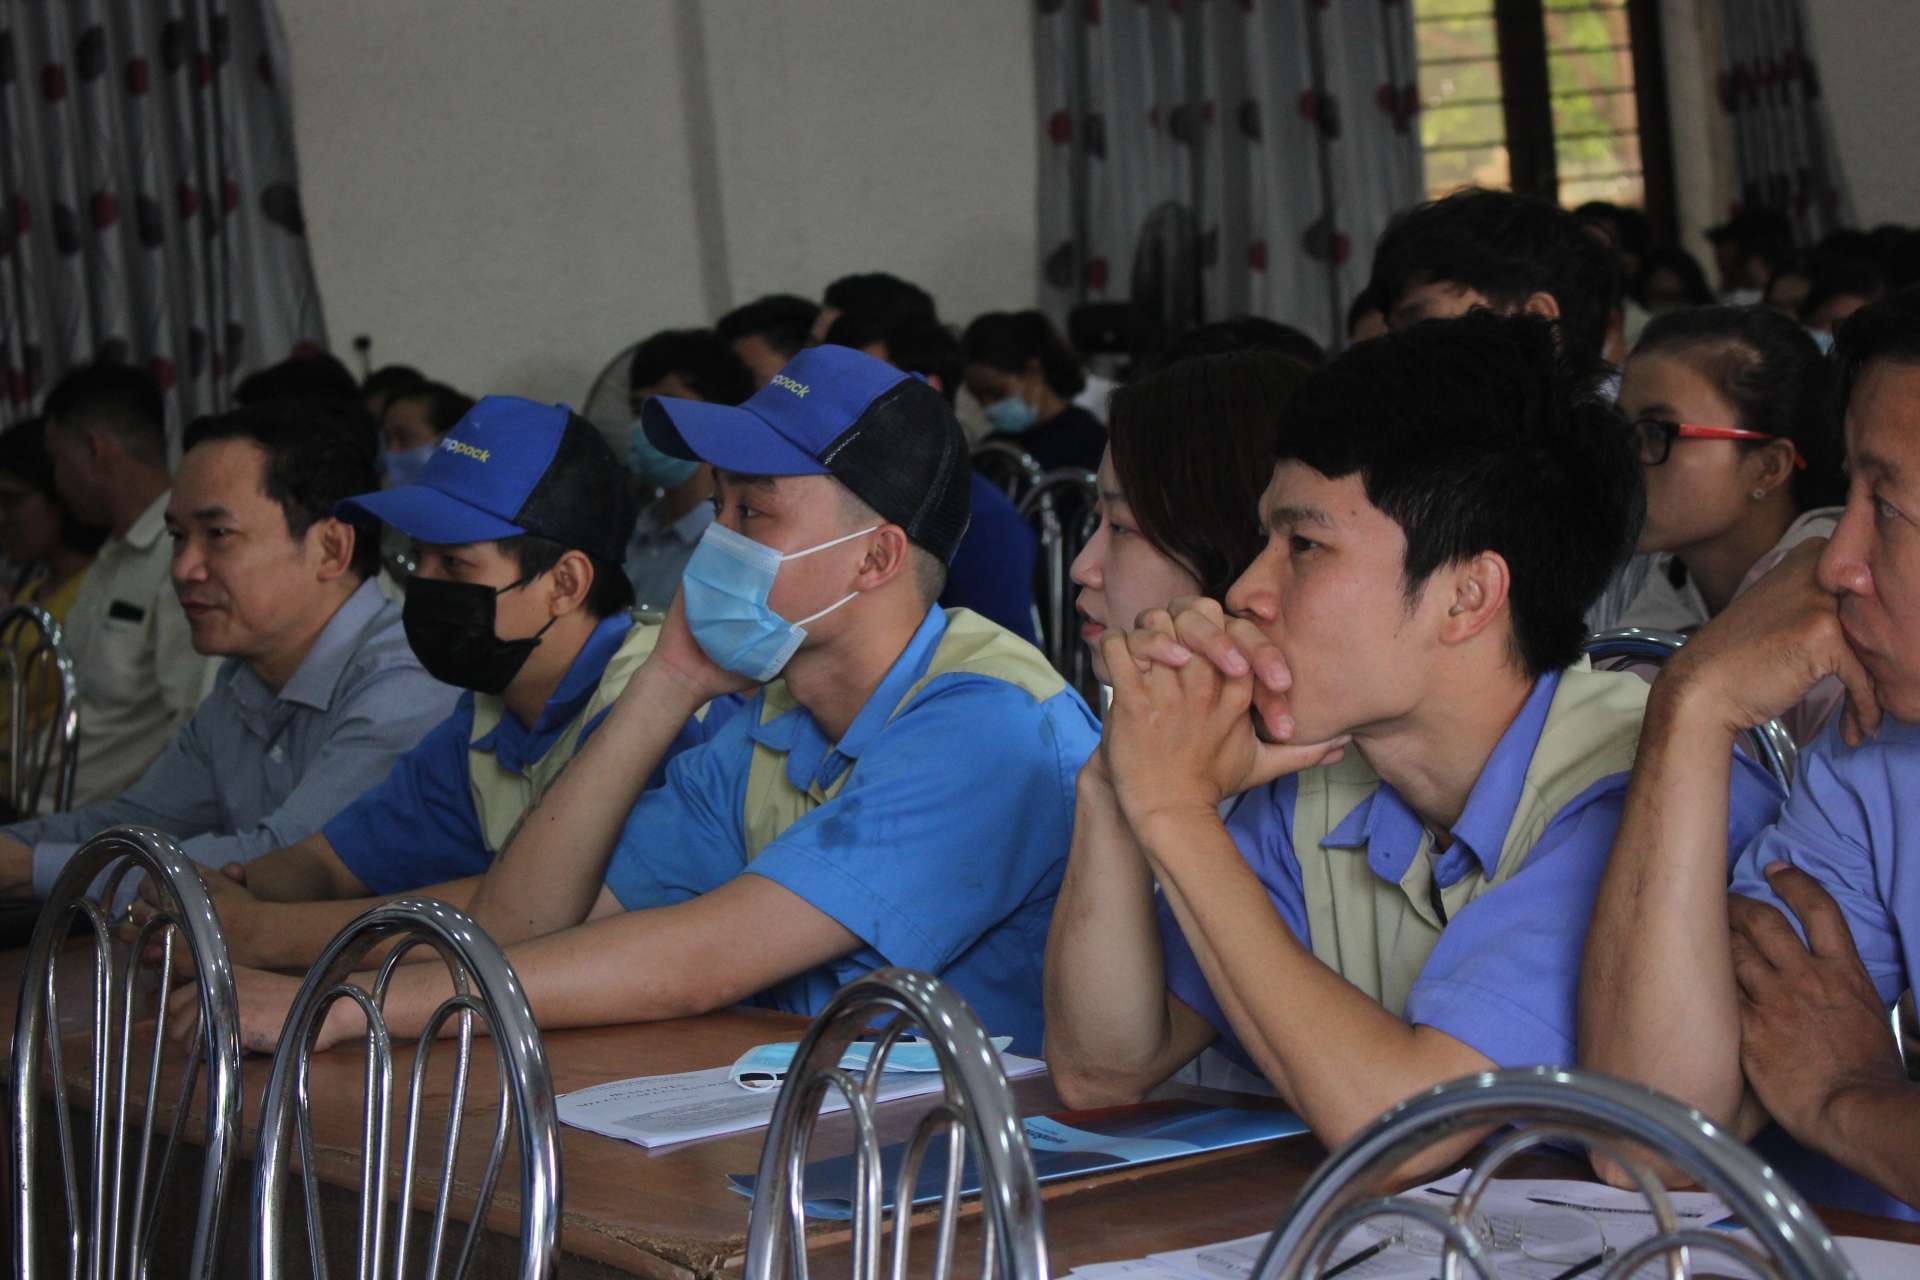 Đà Nẵng: Tập huấn phòng cháy chữa cháy và sơ cấp cứu trong tai nạn trong doanh nghiệp